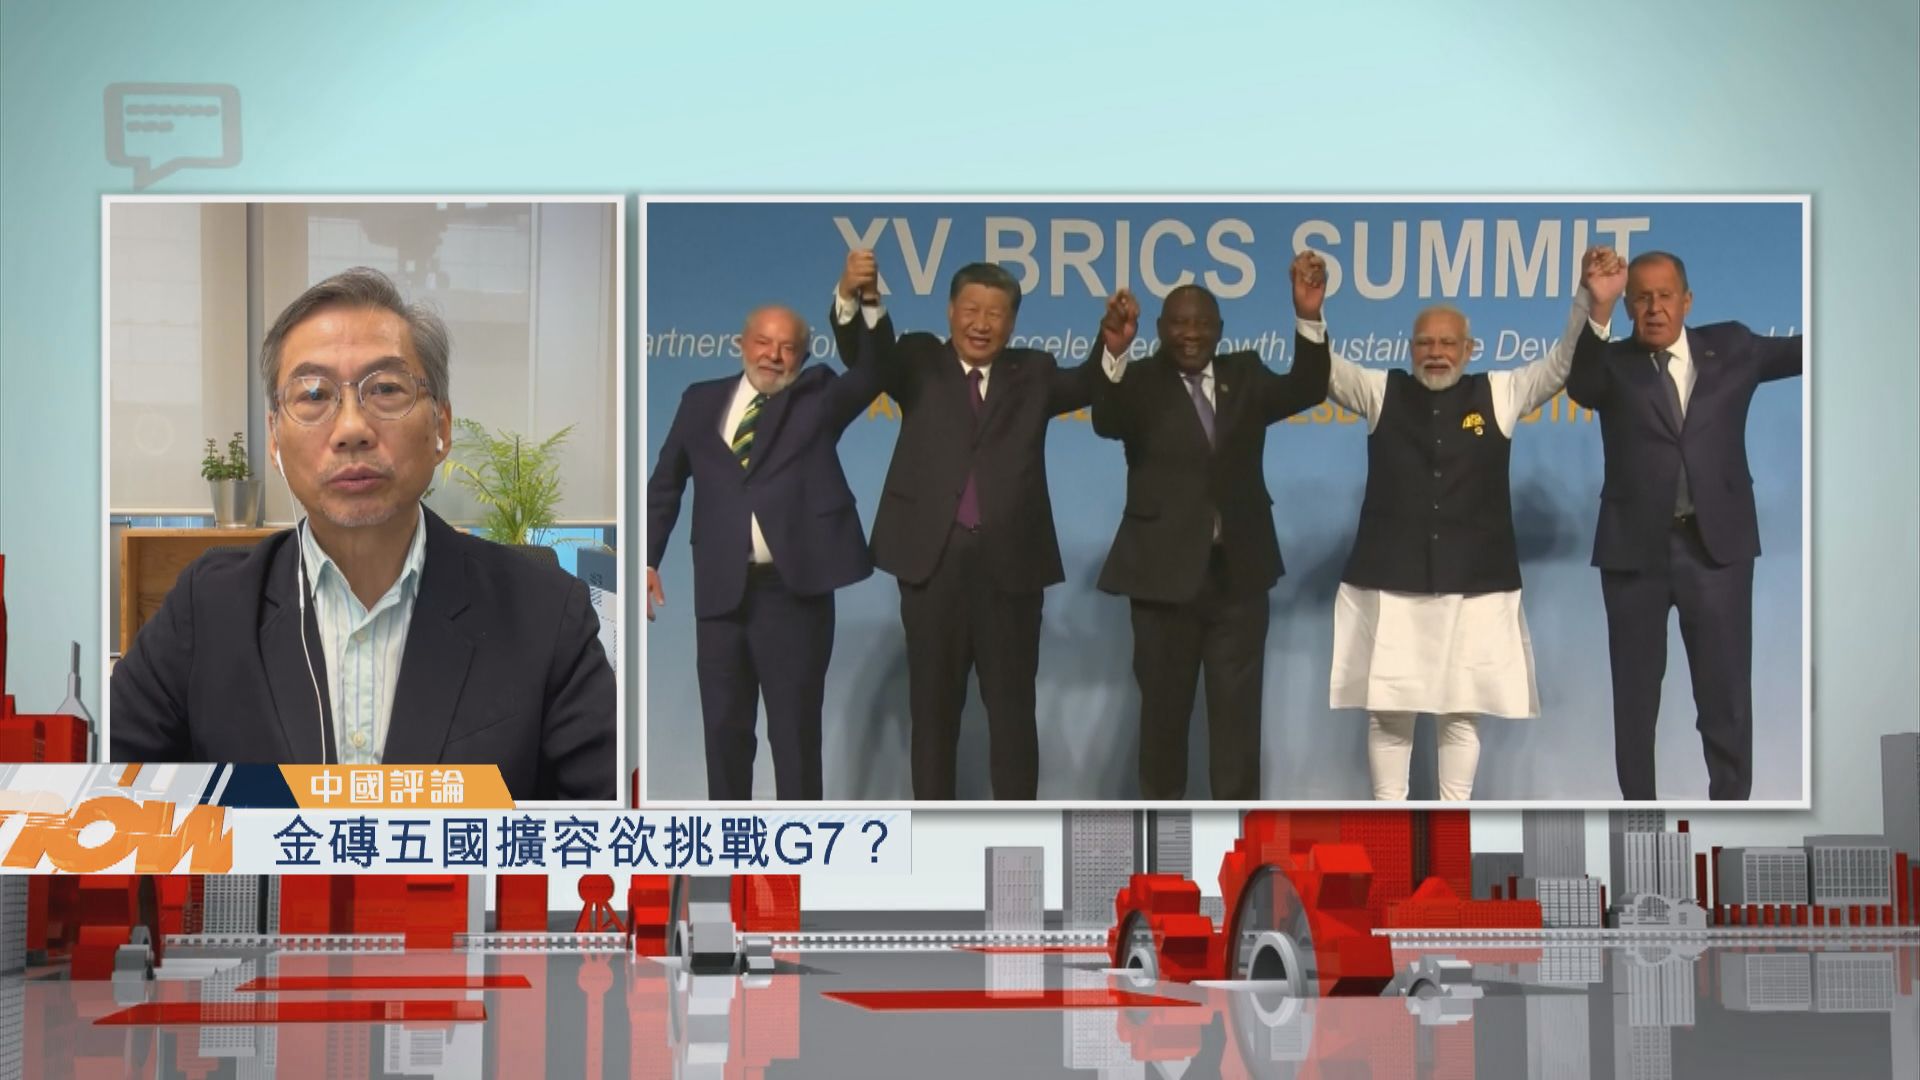 【中國評論】金磚五國擴容欲挑戰G7？